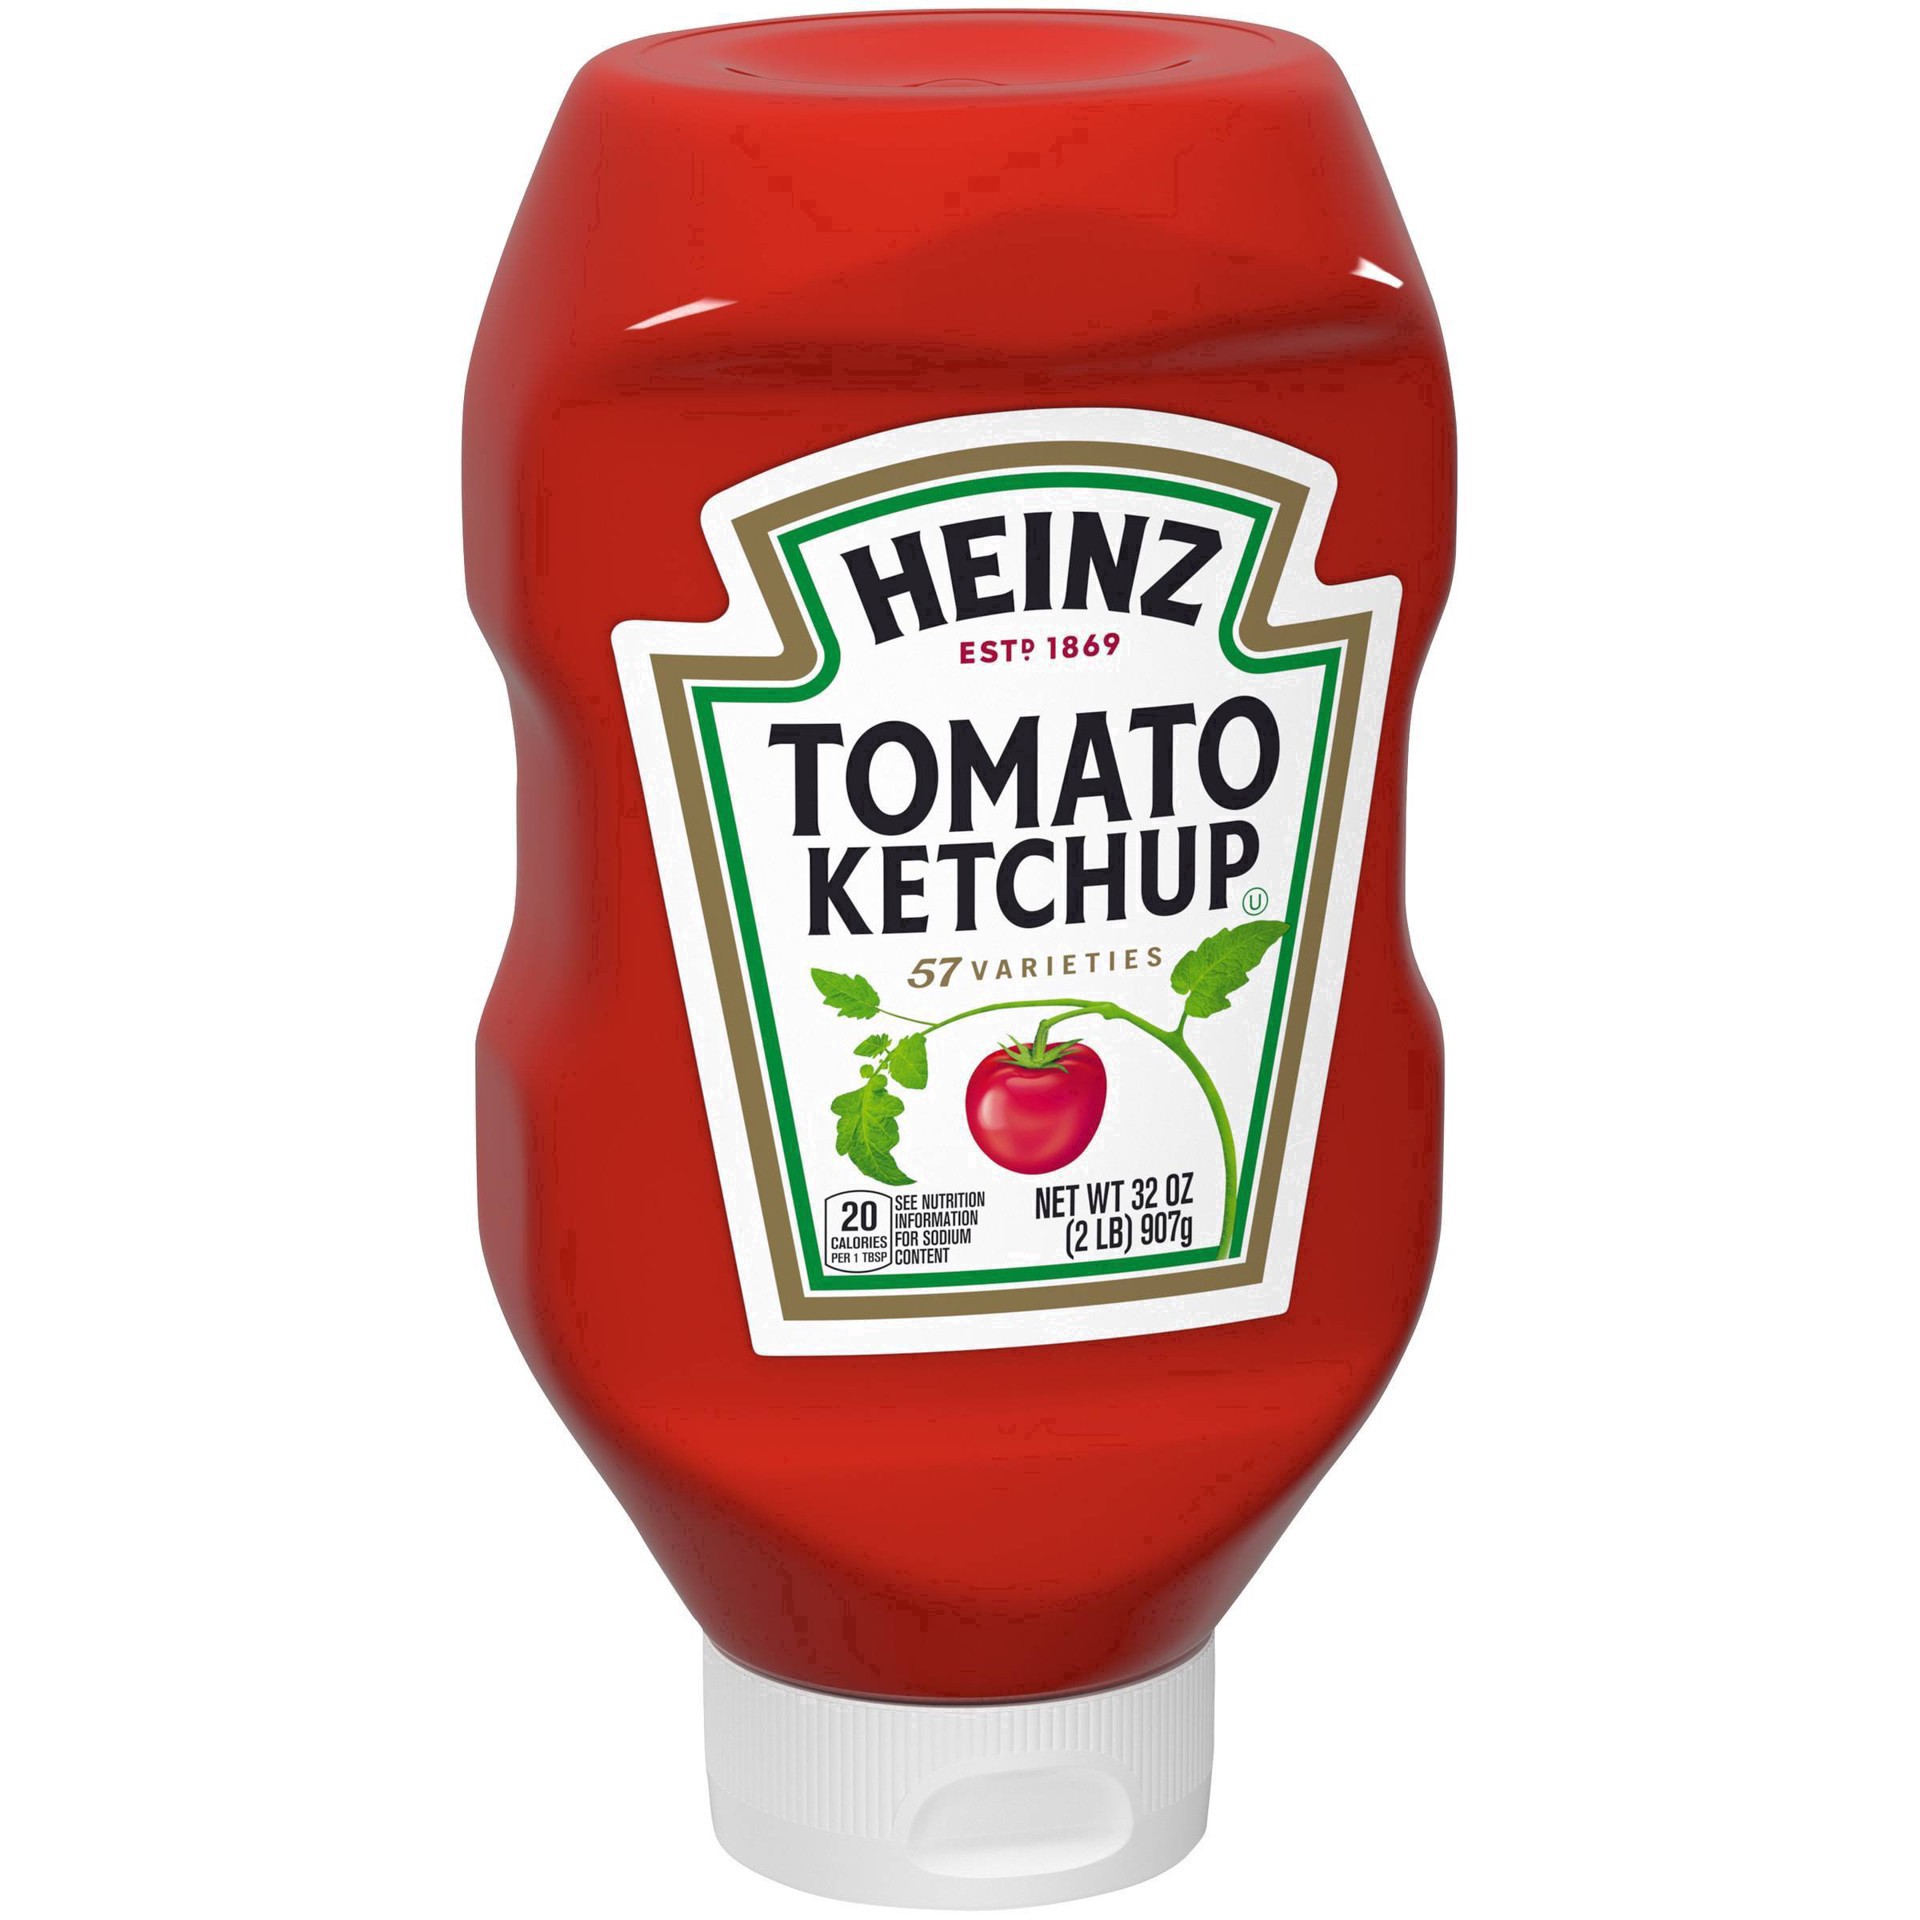 slide 20 of 86, Heinz Tomato Ketchup Bottle, 32 oz